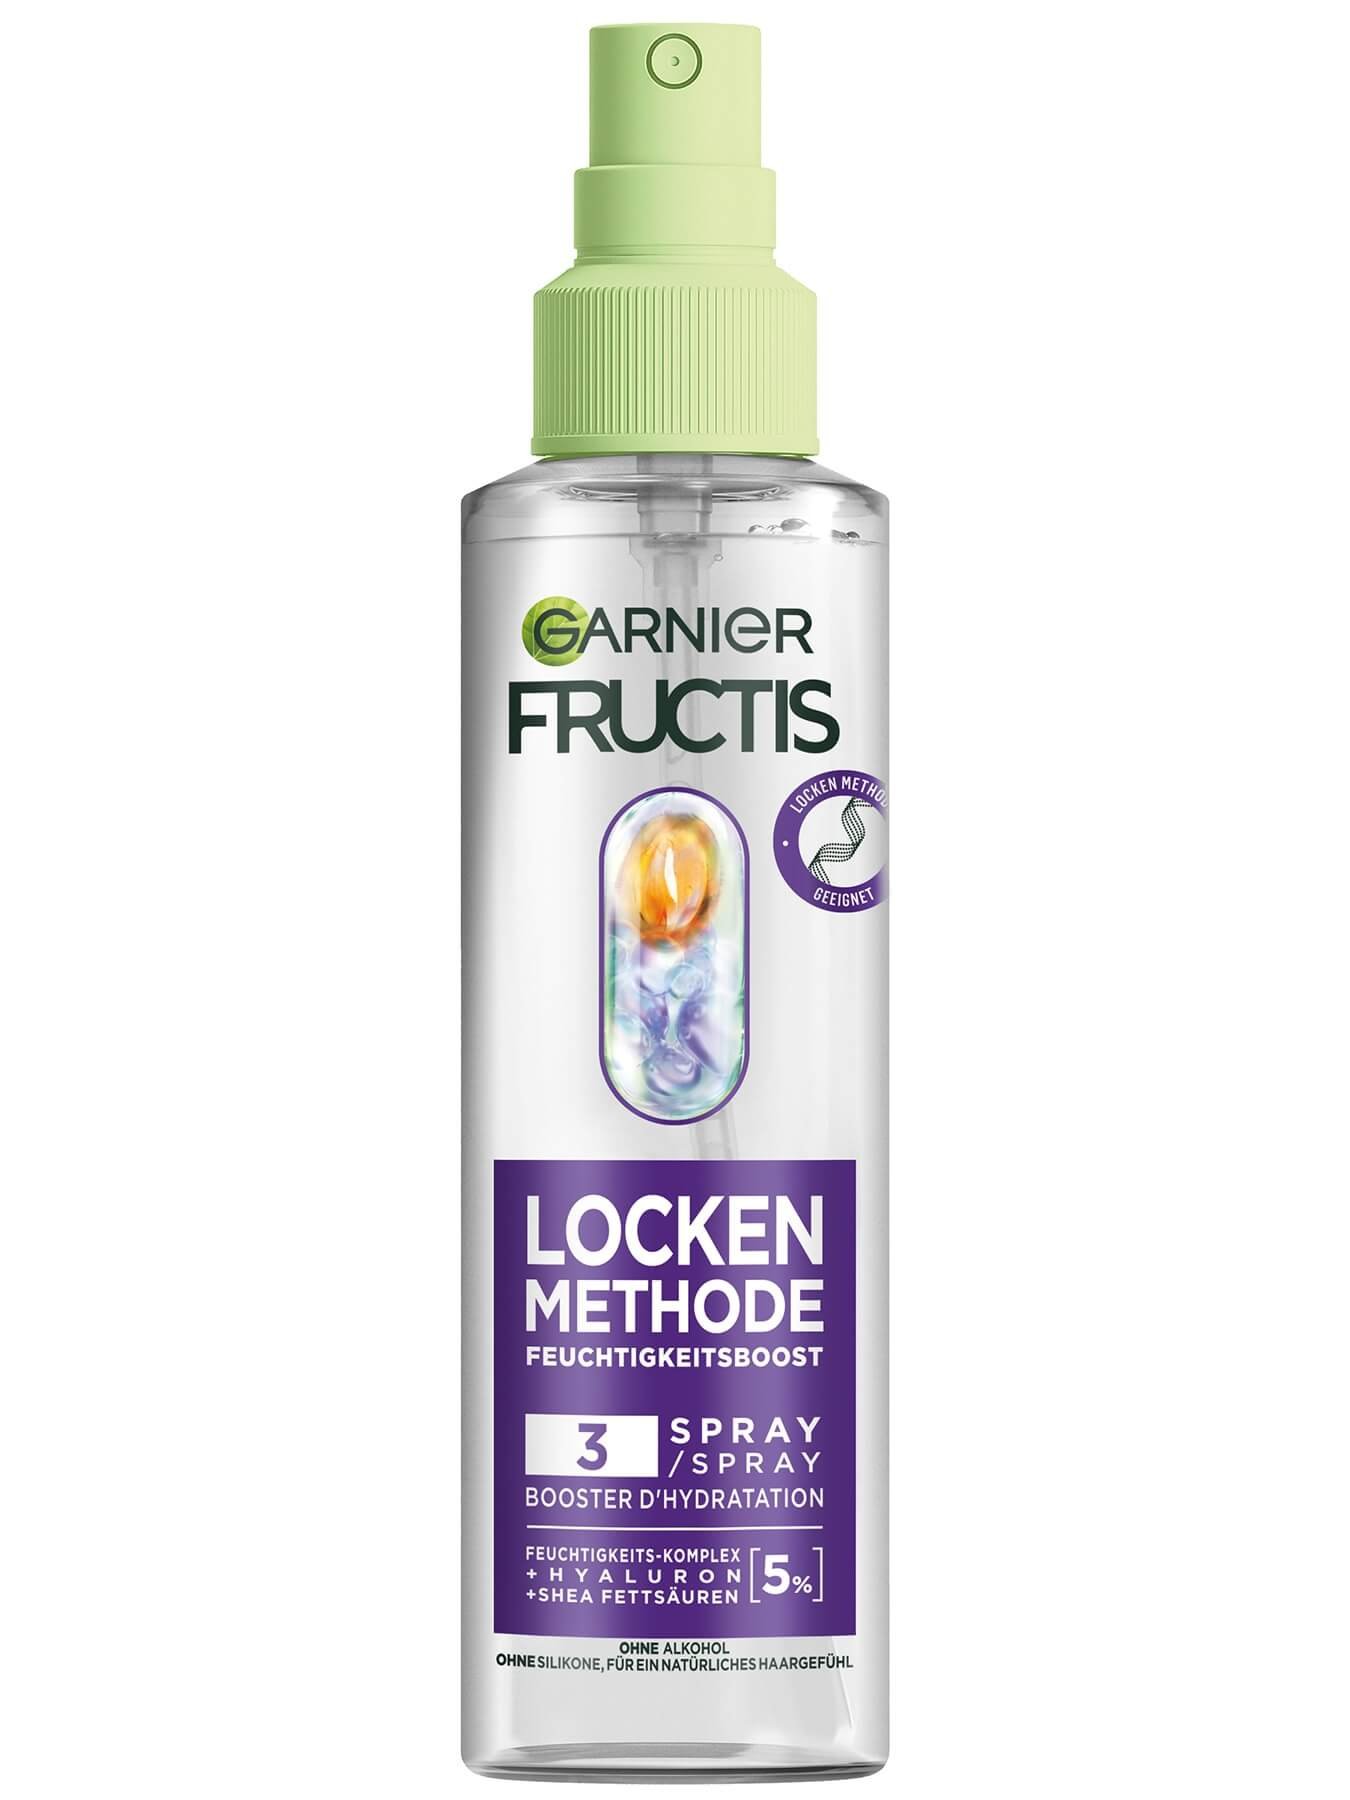 Fructis Locken Methode Feuchtigkeitsboost Haarpflege-Spray Produktbild